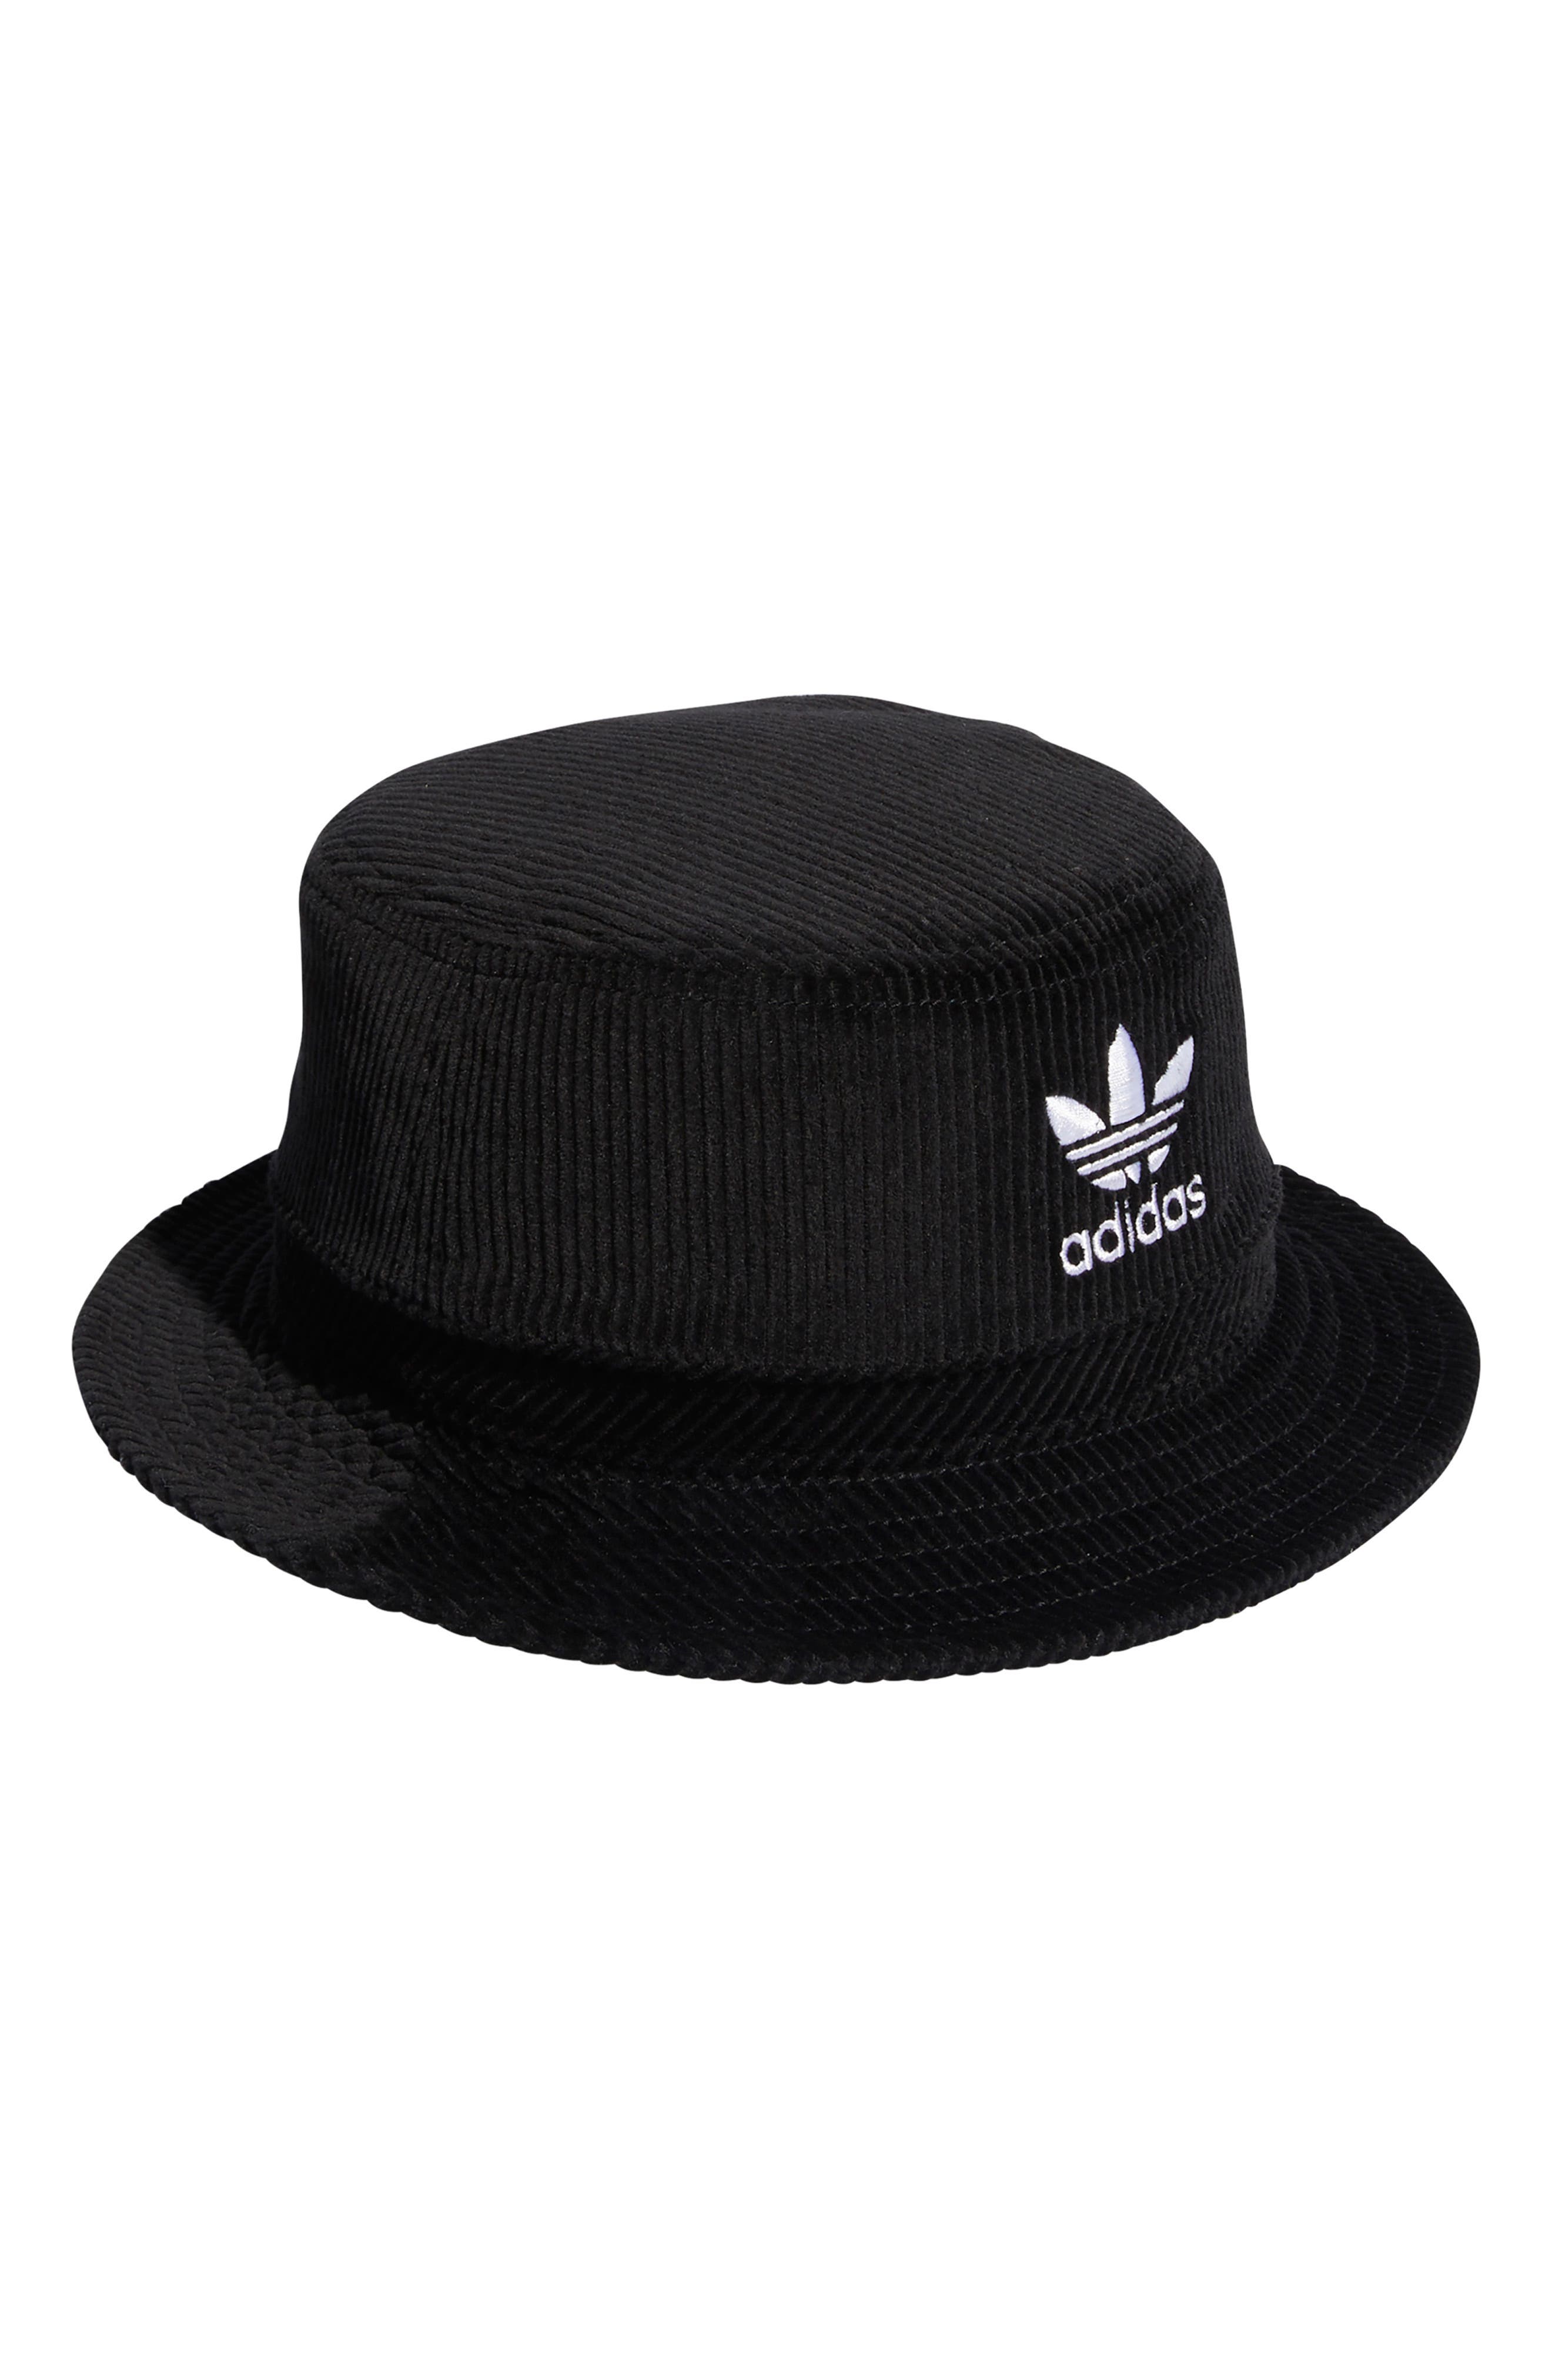 adidas Originals Corduroy Bucket Hat 